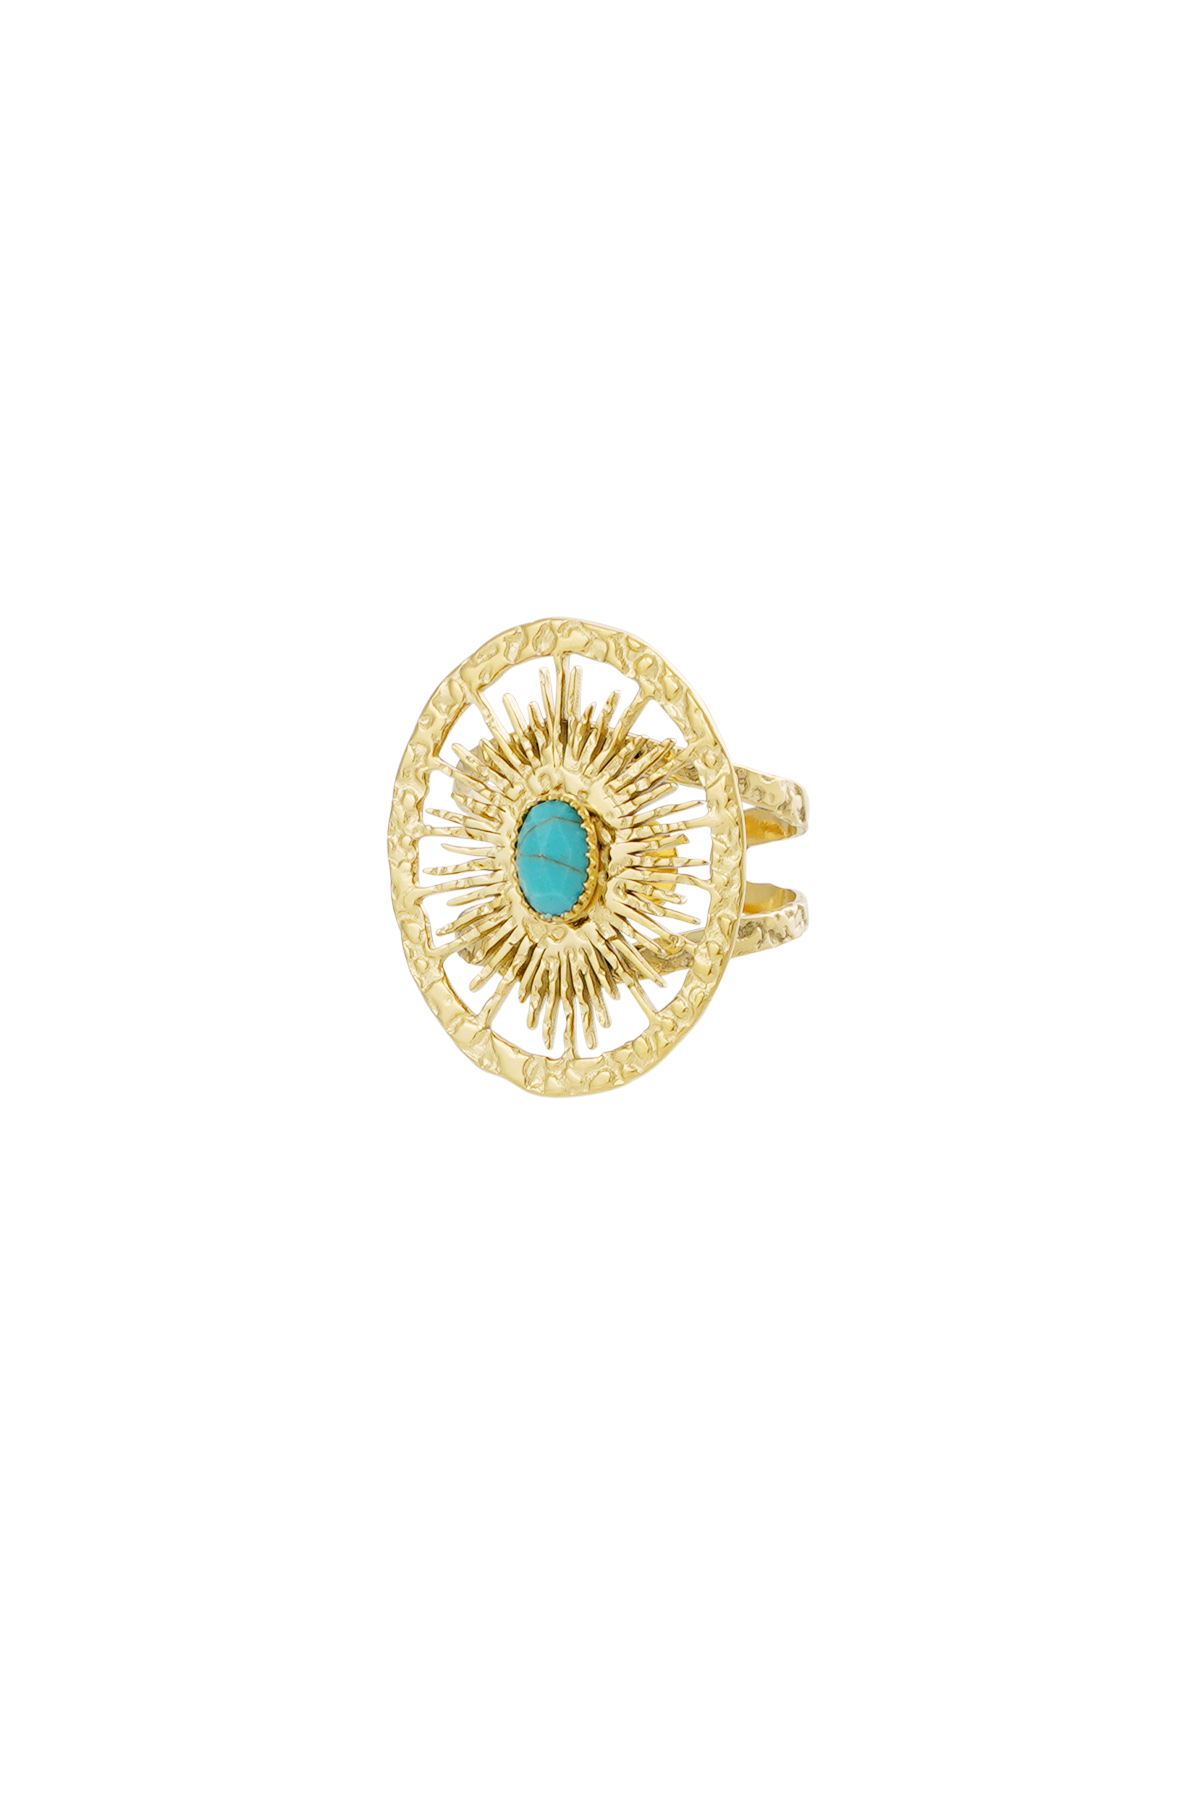 Ring ronde twister met steen - goud/turquoise